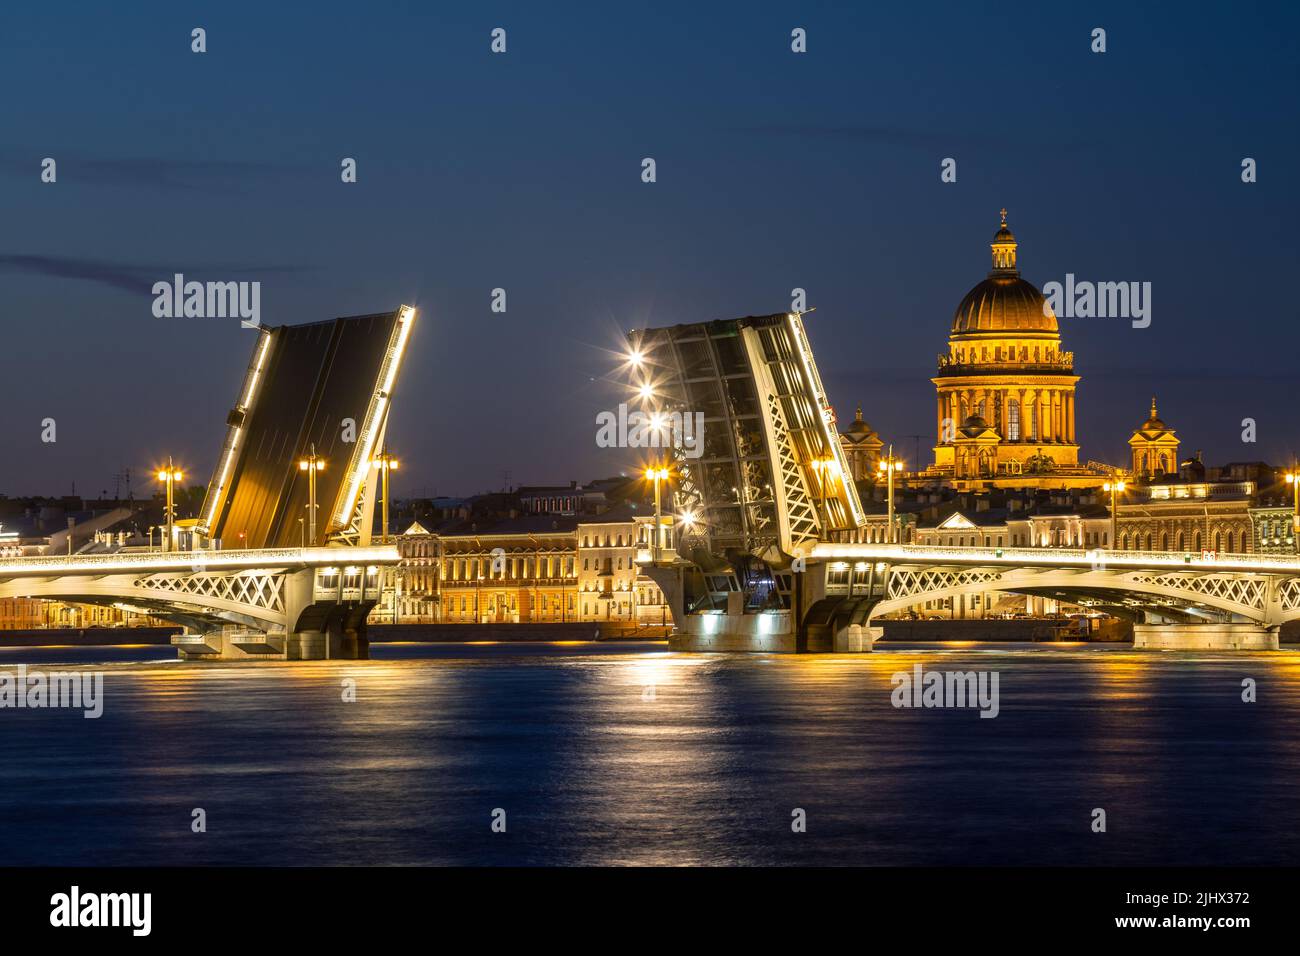 Nuits blanches à Saint-Pétersbourg. La cathédrale Saint-Isaac et le pont d'Annonciation divorcé. Magnifique paysage urbain nocturne Banque D'Images